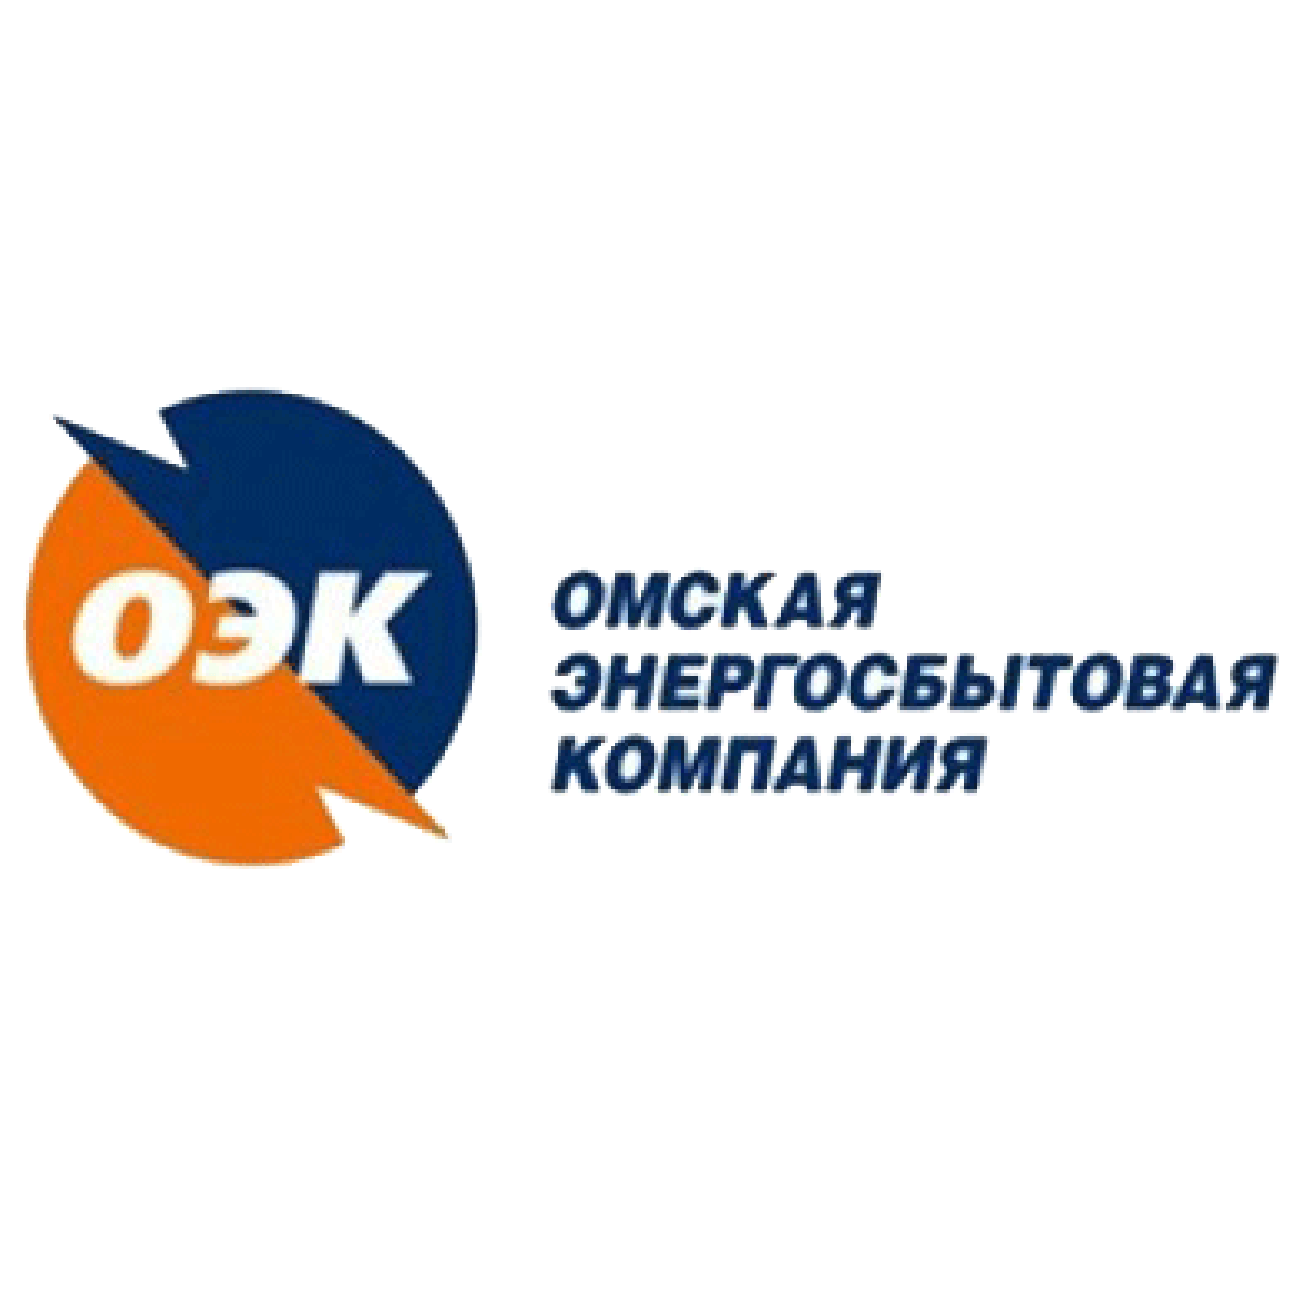 ОЭК Омская энергосбытовая компания. Логотип Омская энергосбытовая Омск. Энергосбытовая компания Омск личный. Объединенная энергетическая компания логотип. Сайт компании омская энергосбытовая компания